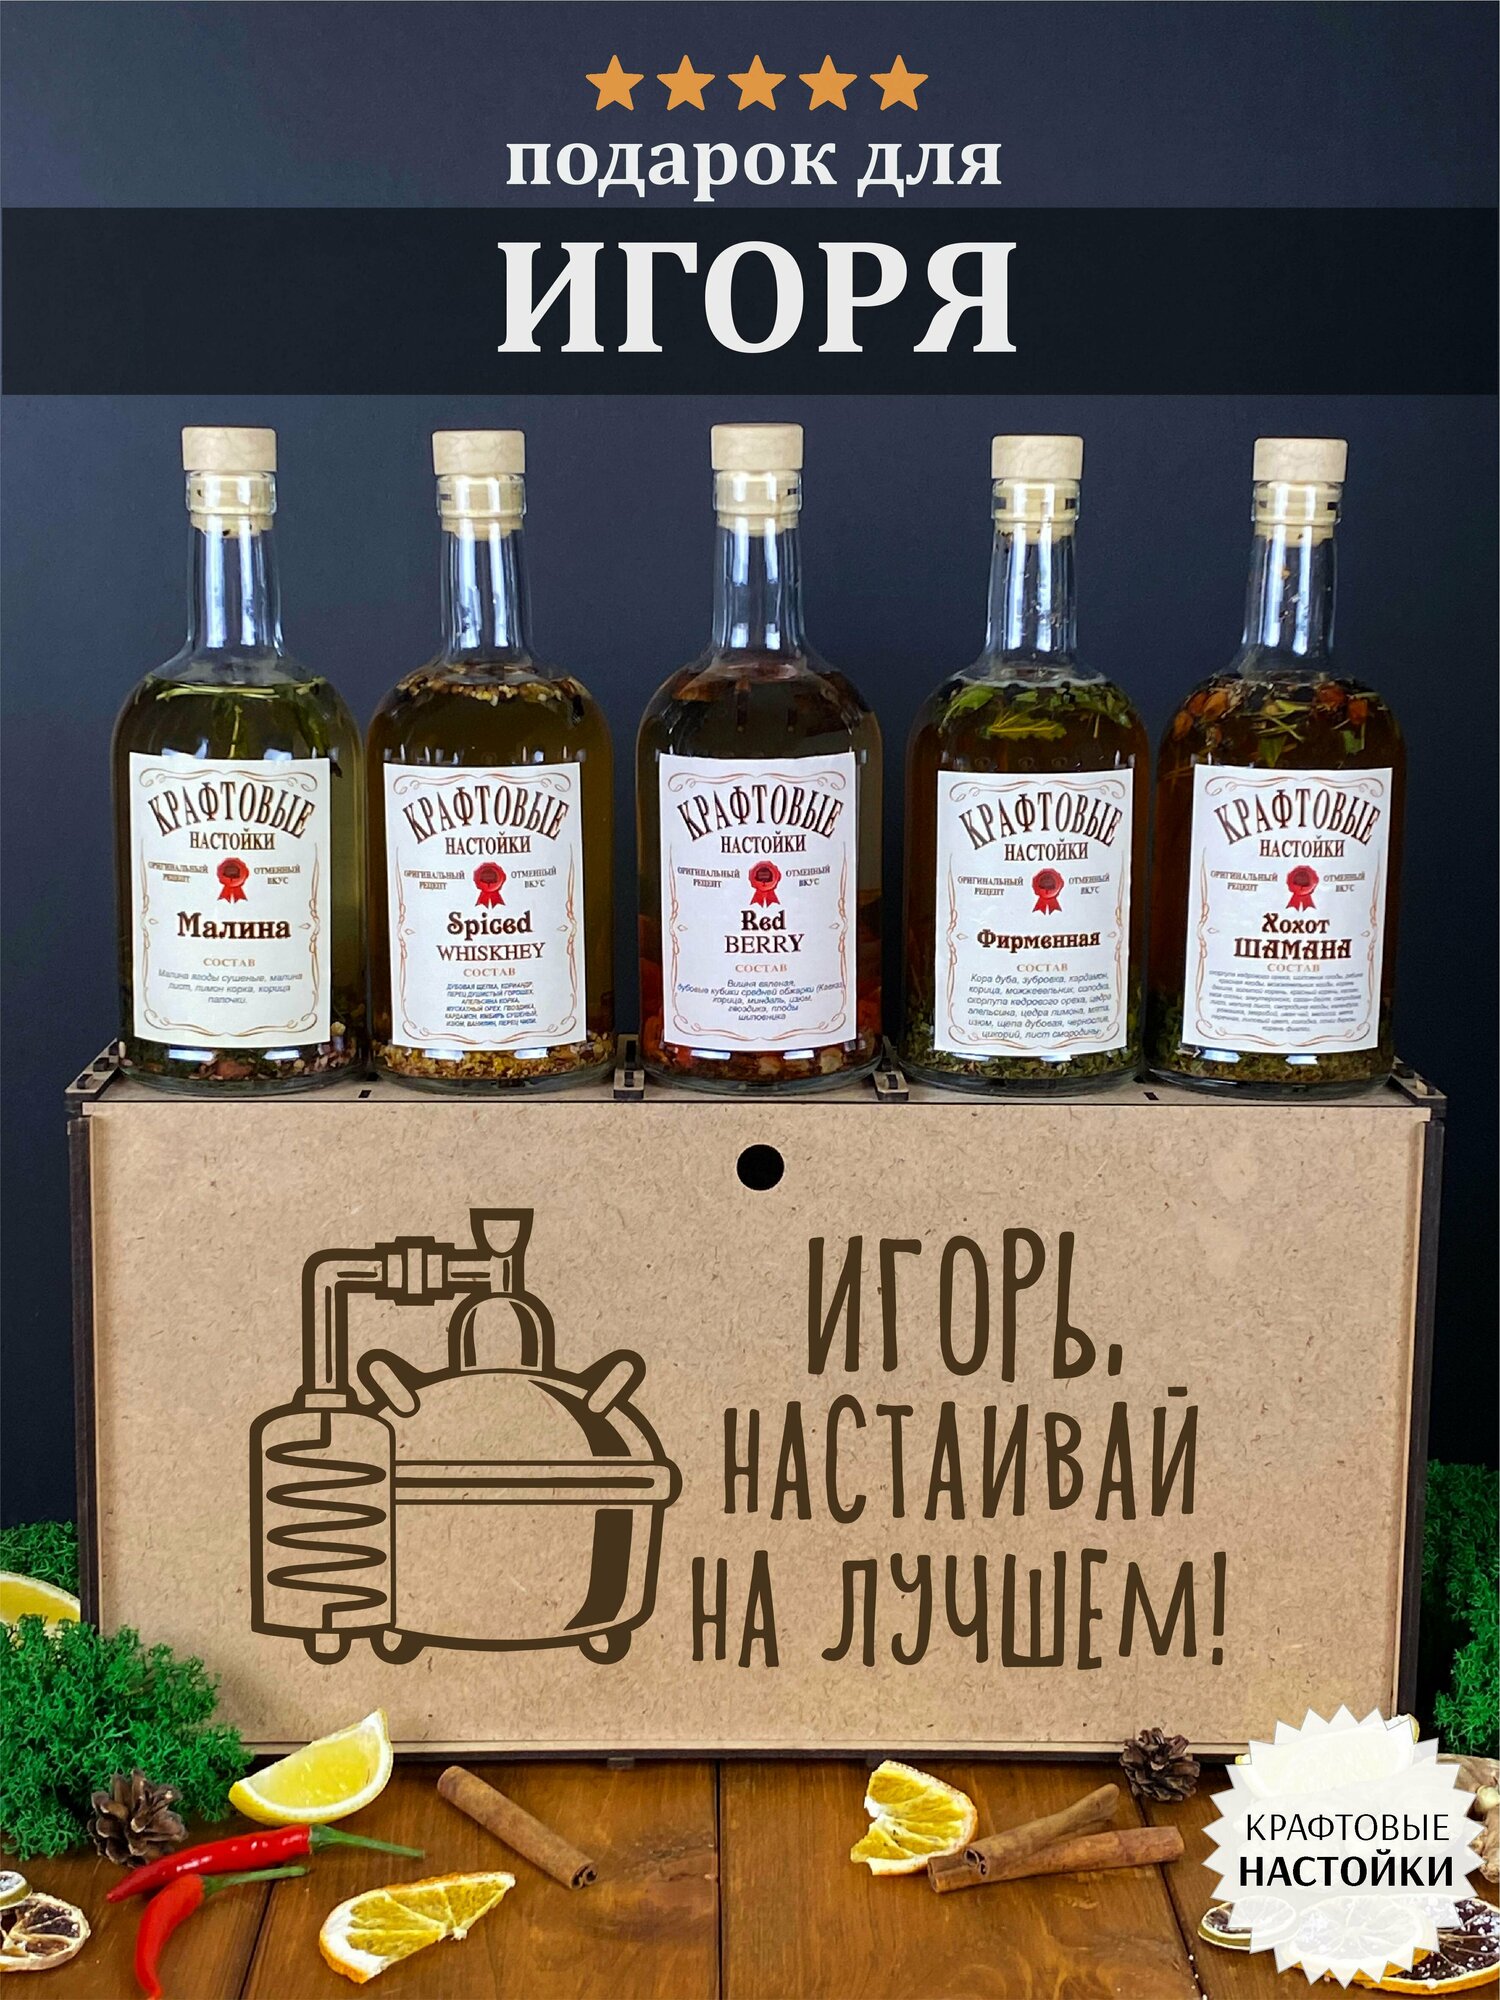 Именной набор для приготовления крафтовых настоек WoodStory "Игорь настаивает", 5 бутылок по 0,5 л.